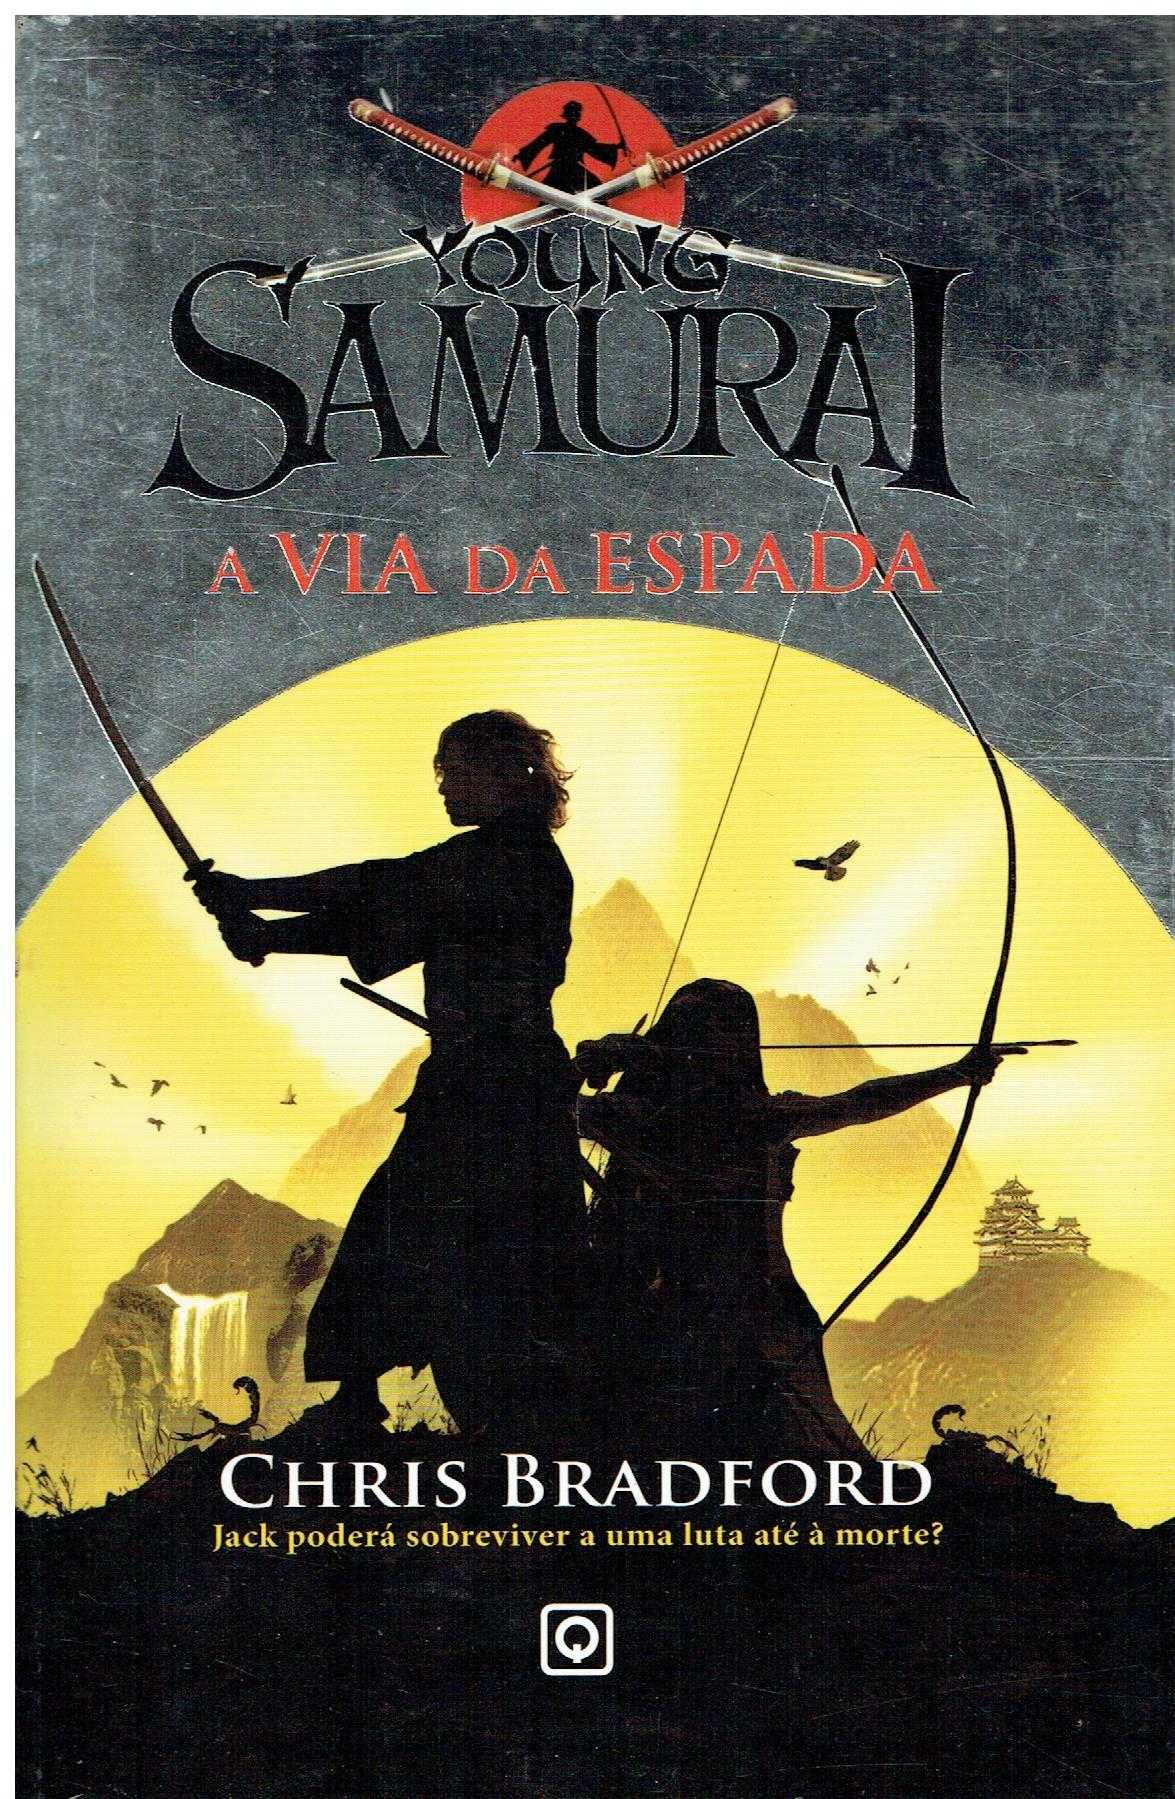 13548

O Jovem Samurai - A Via da Espada
de Chris Bradford